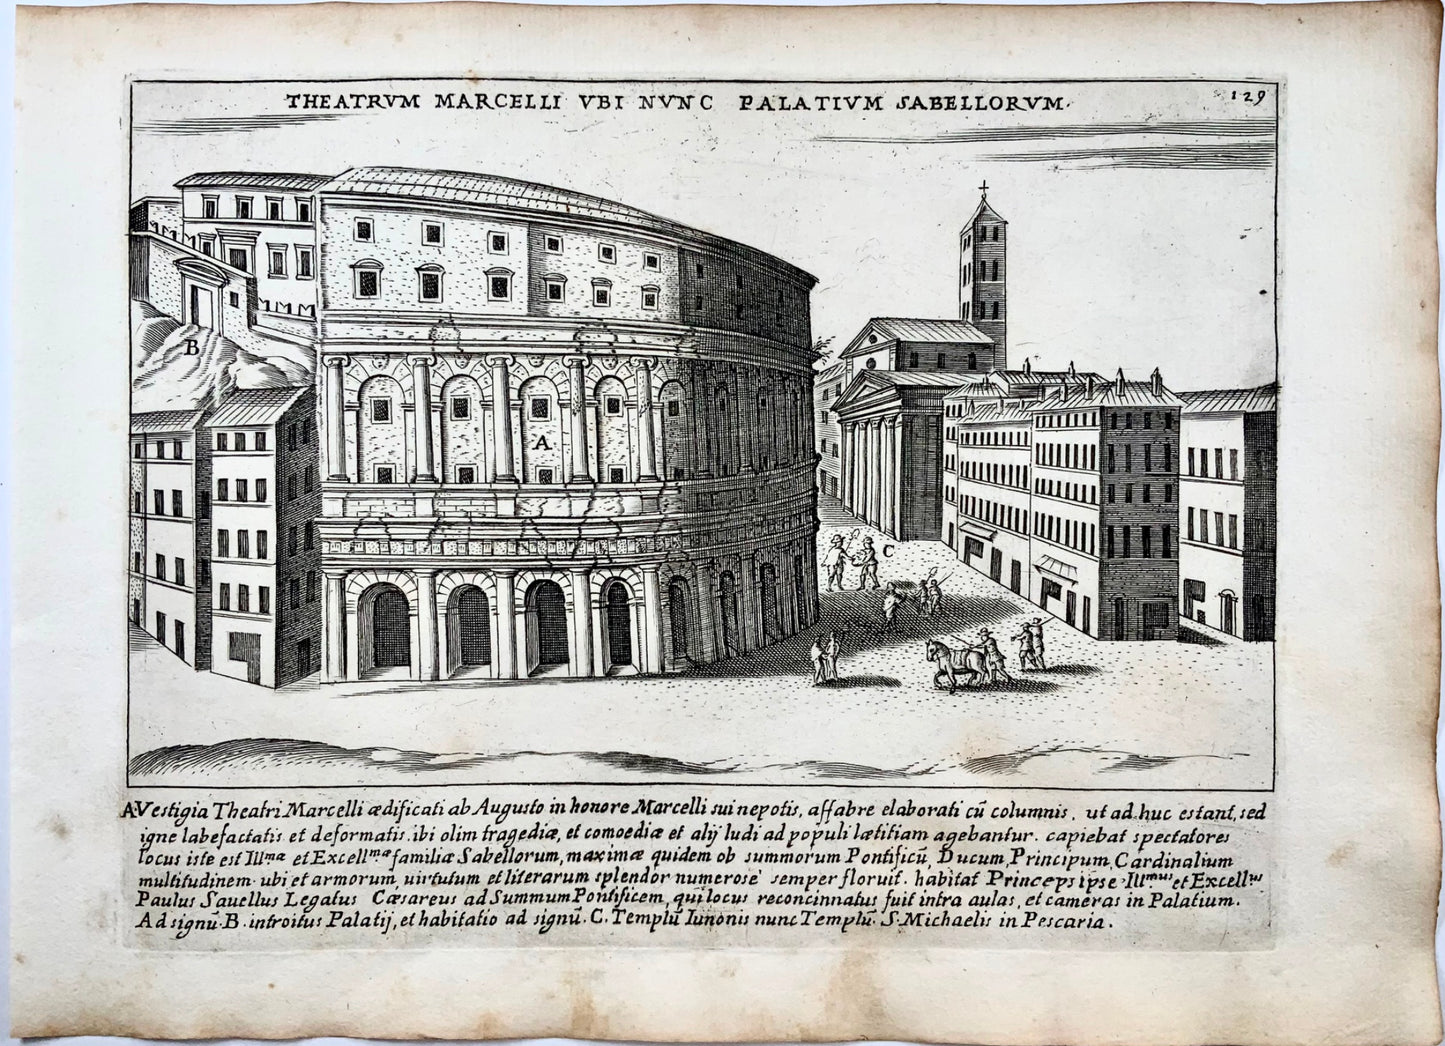 1624 Lauro, Giacomo, Theater of Marcellus, Theatrum Marcelli Palatium Sabellore